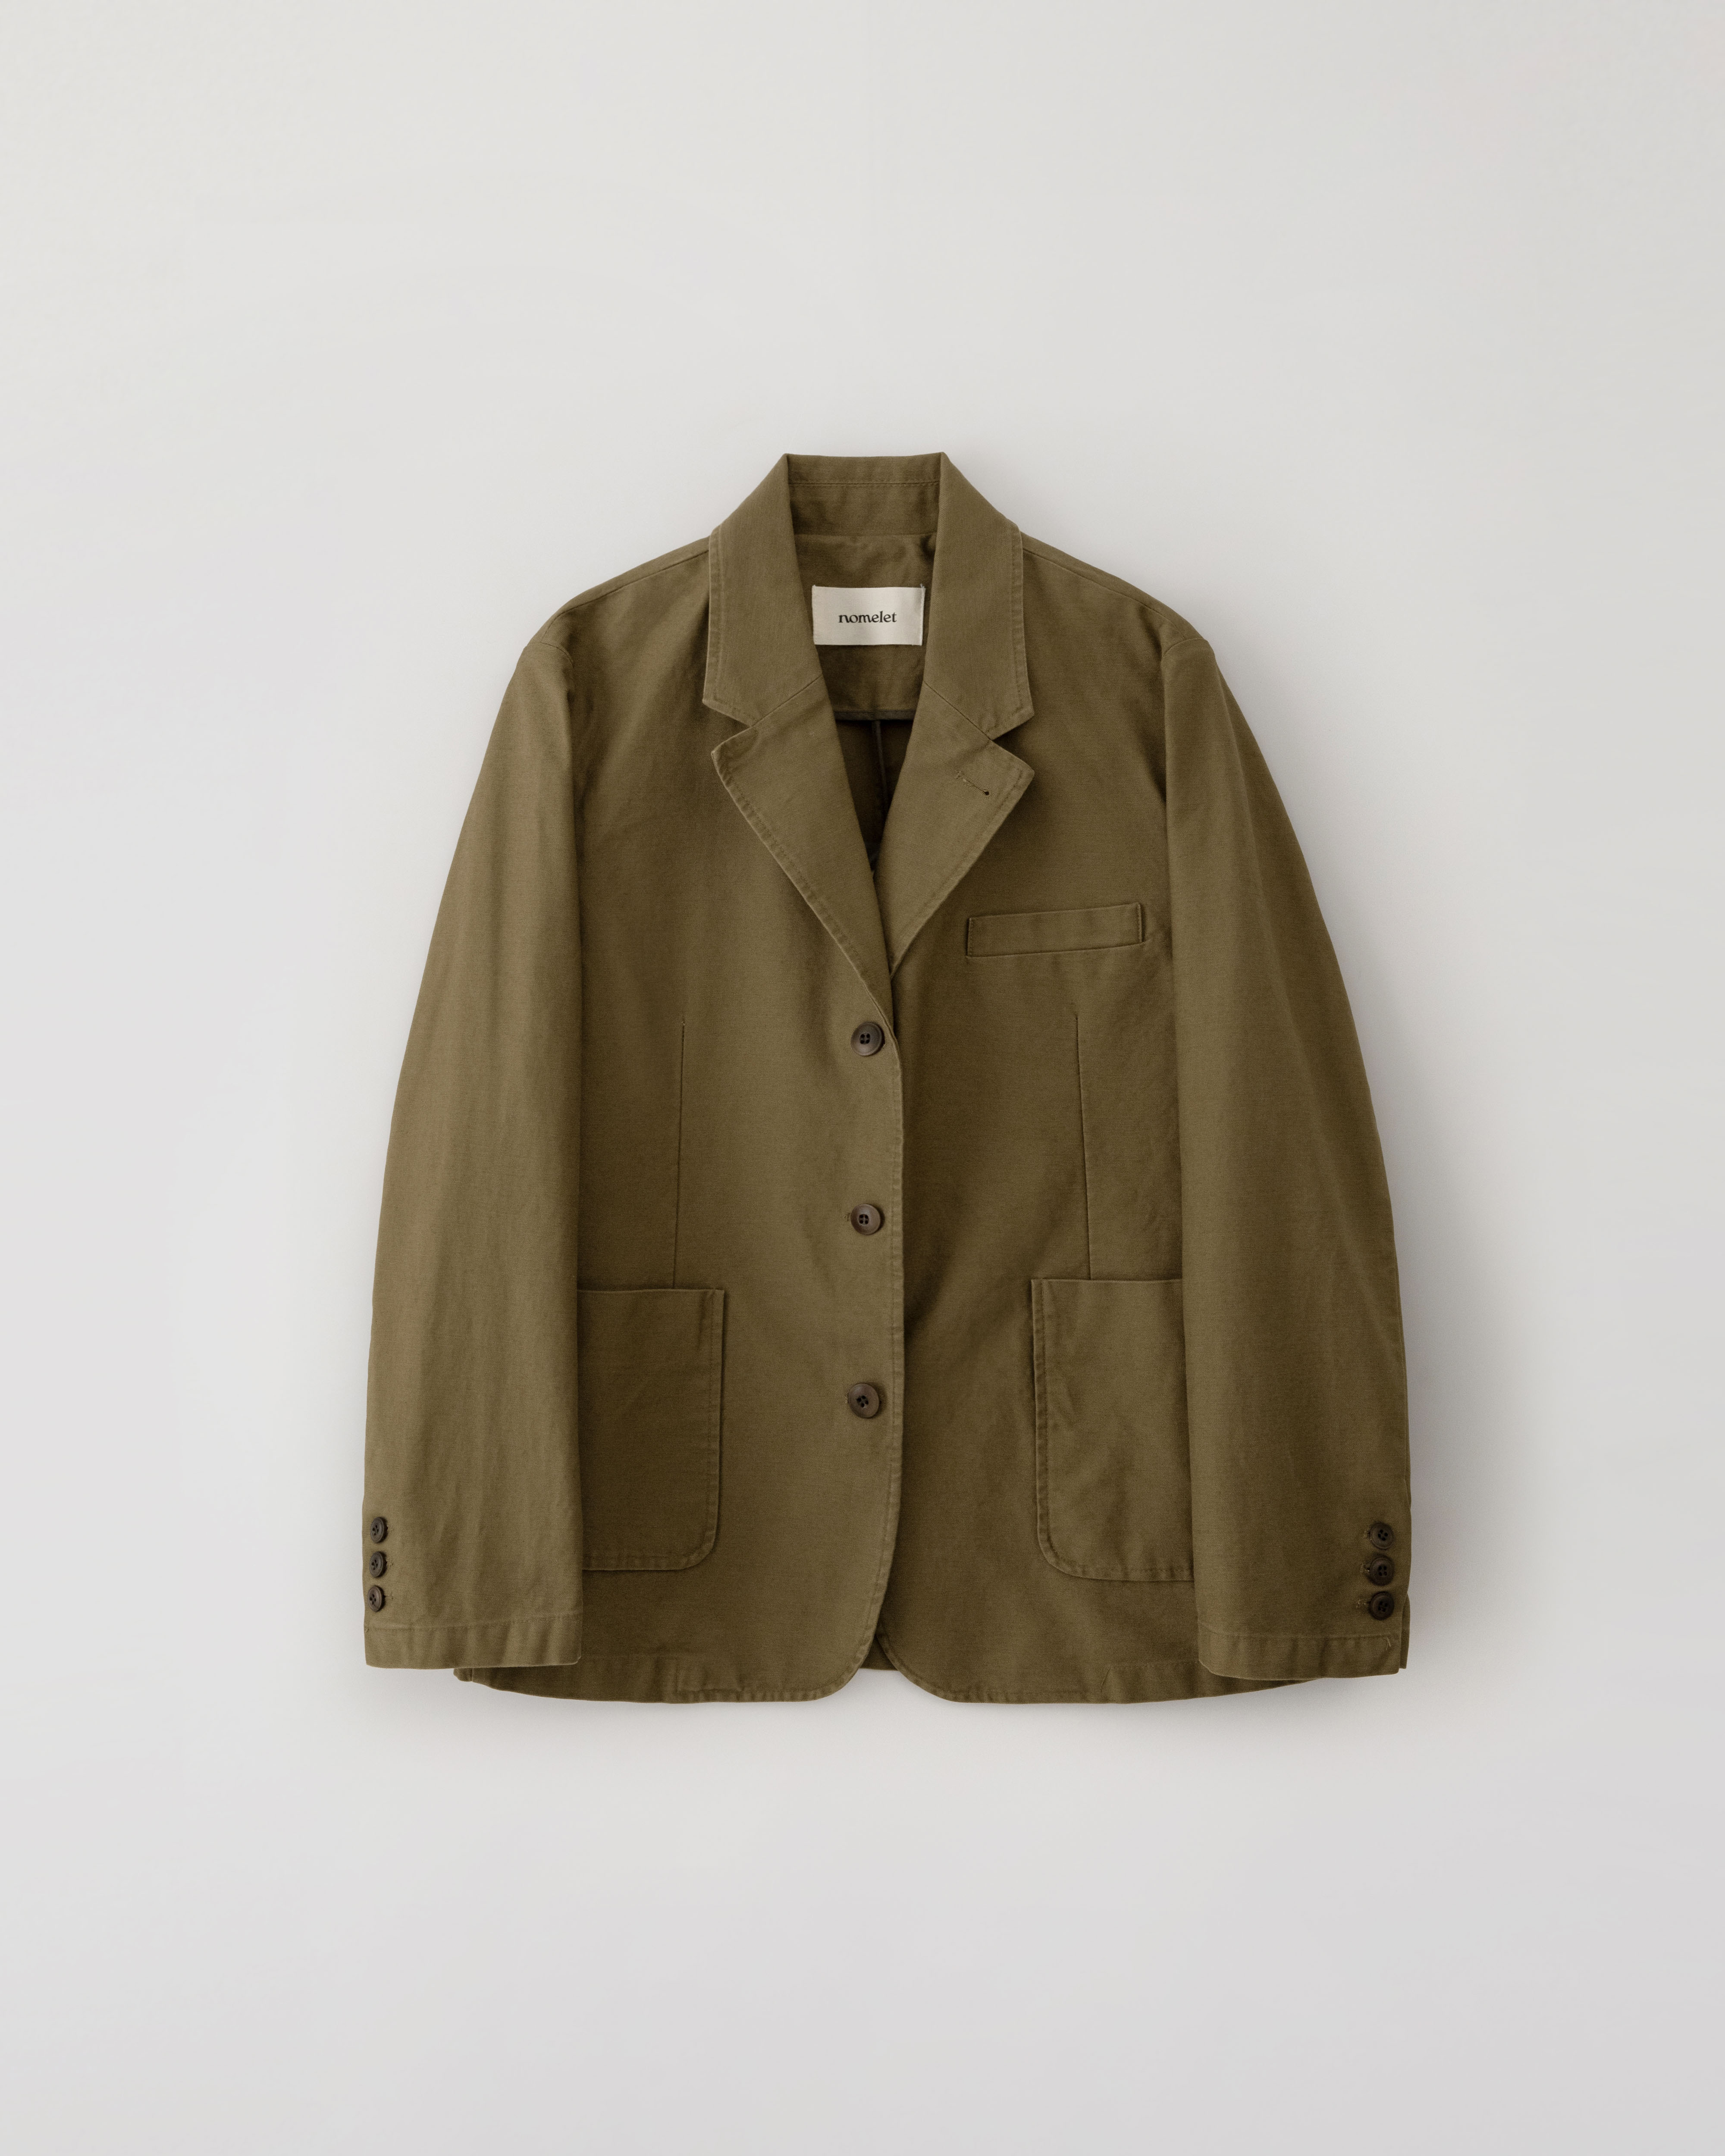 Sienna garments cotton jacket - brown